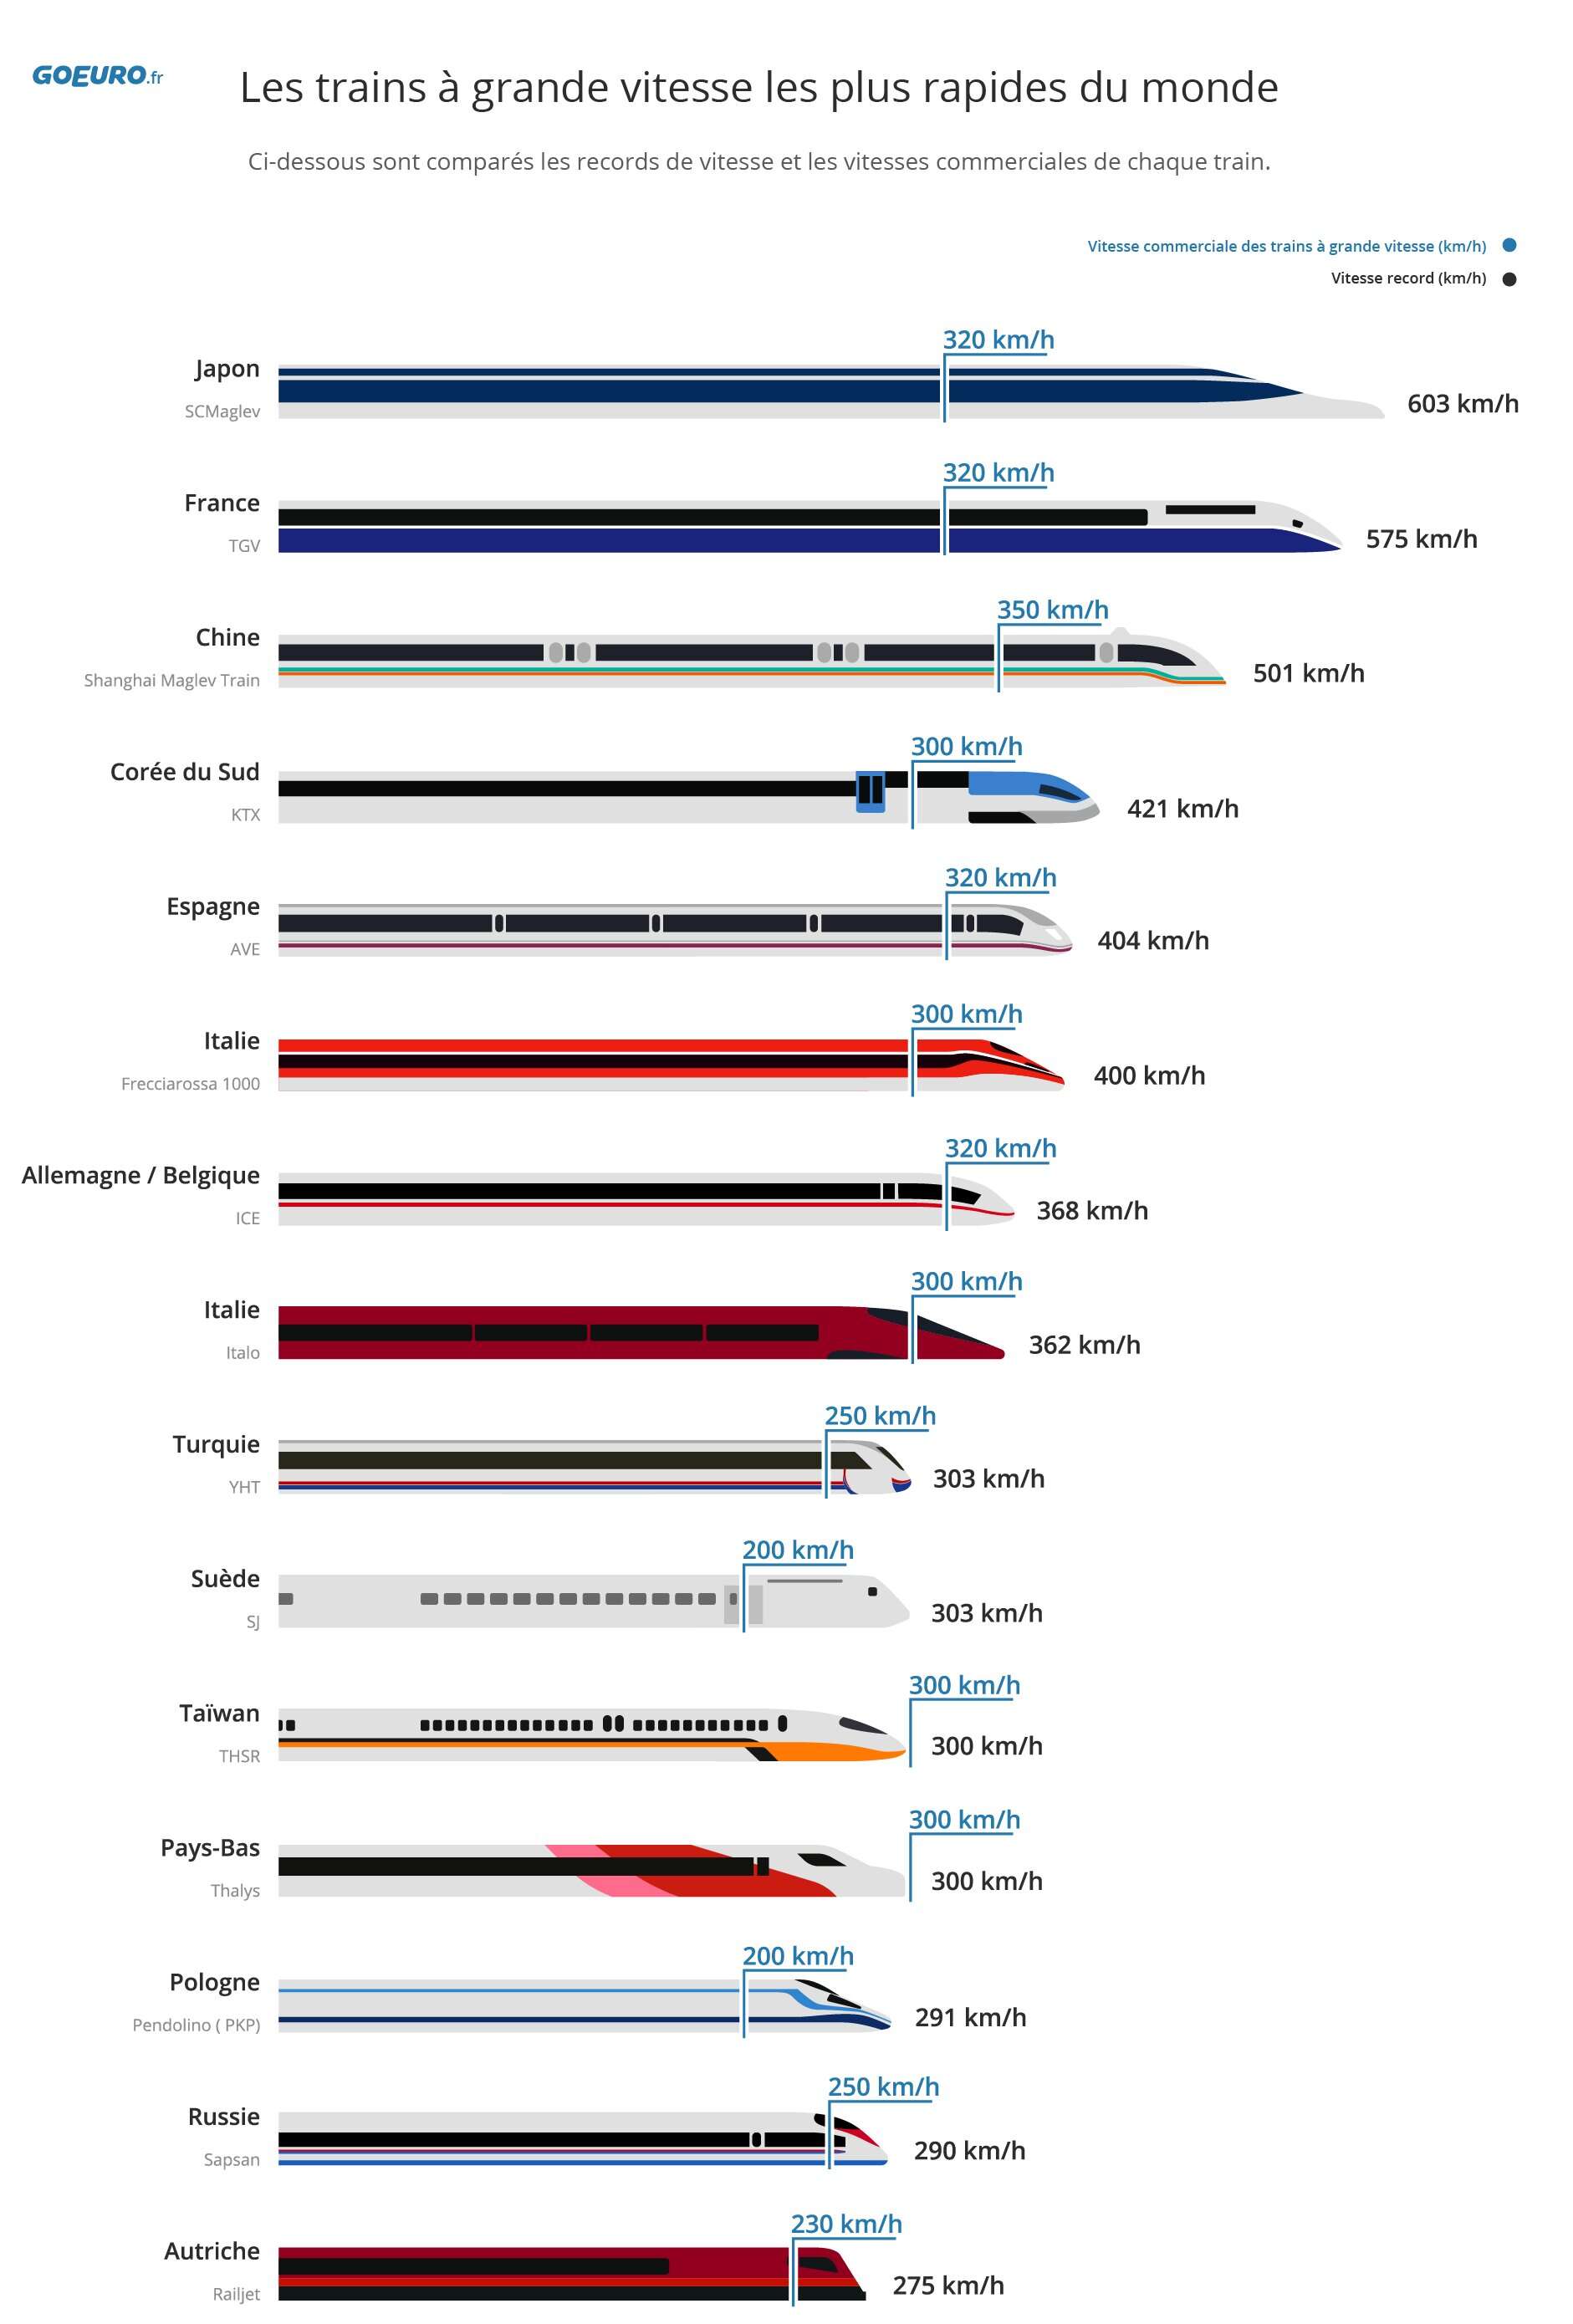 Vitesses commerciales et records de vitesse par les TGV dns le Monde